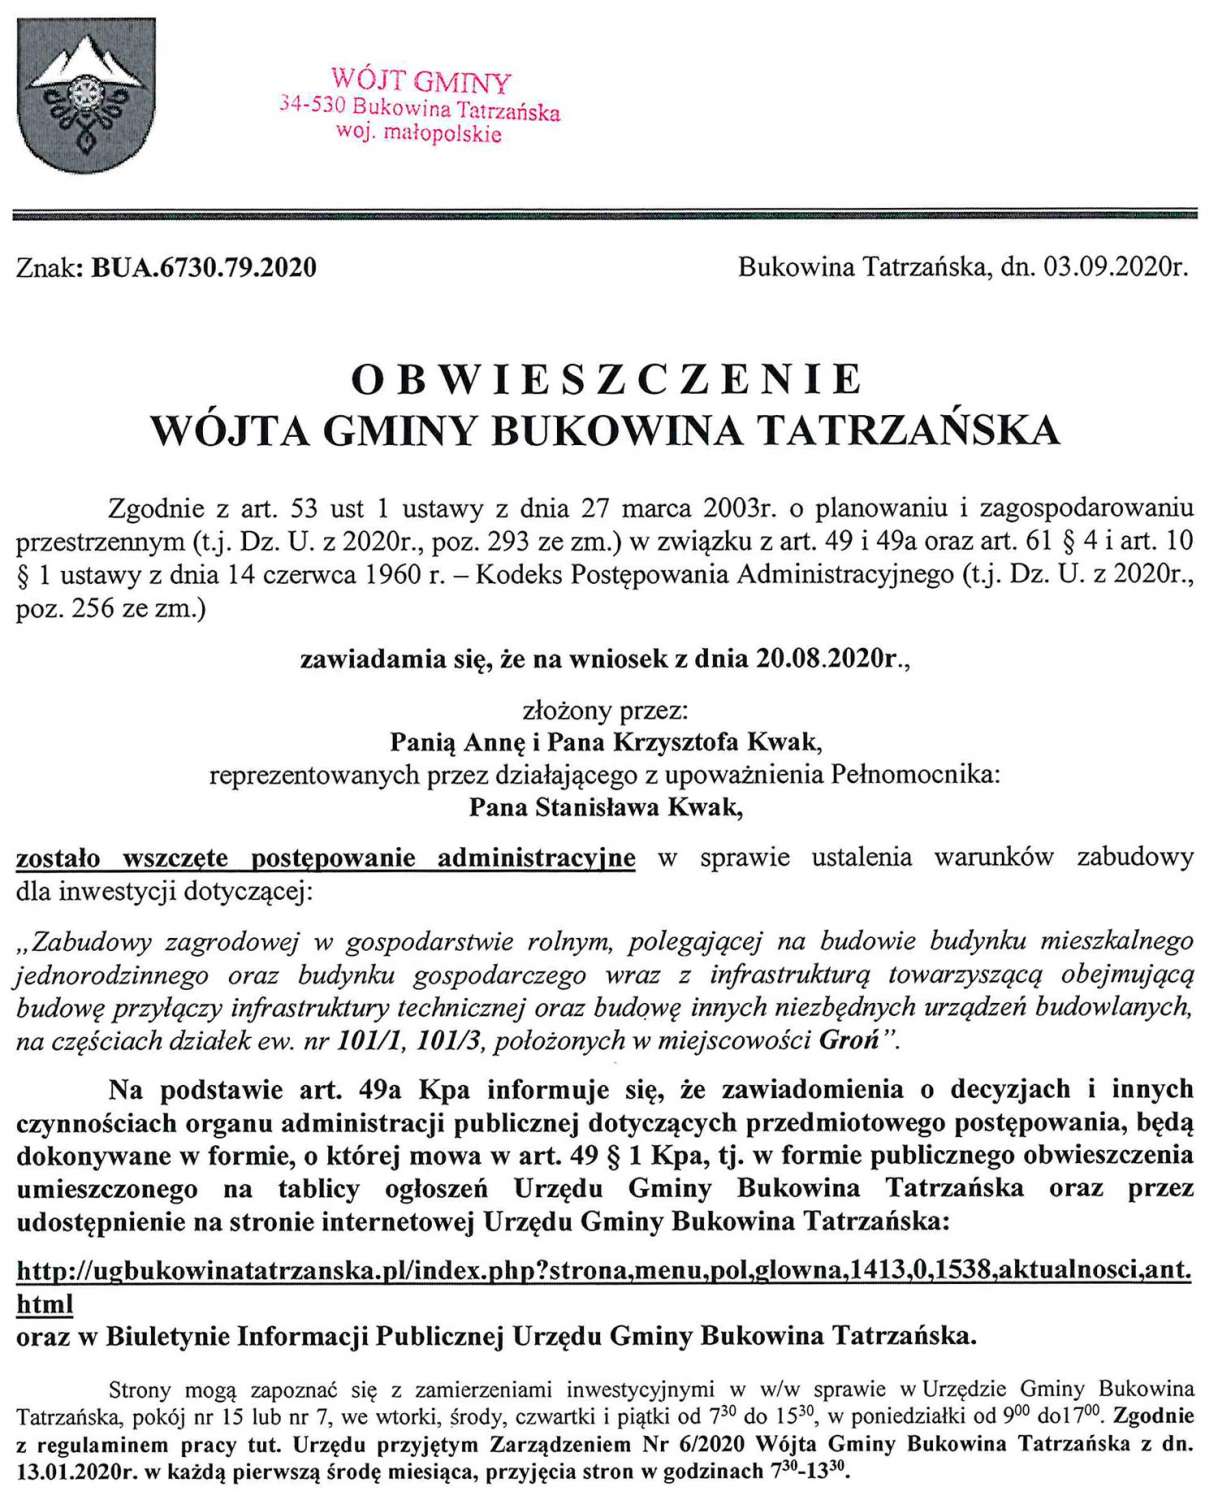 Obwieszczenie Wójta Gminy Bukowina Tatrzańska BUA 6730.79.2020